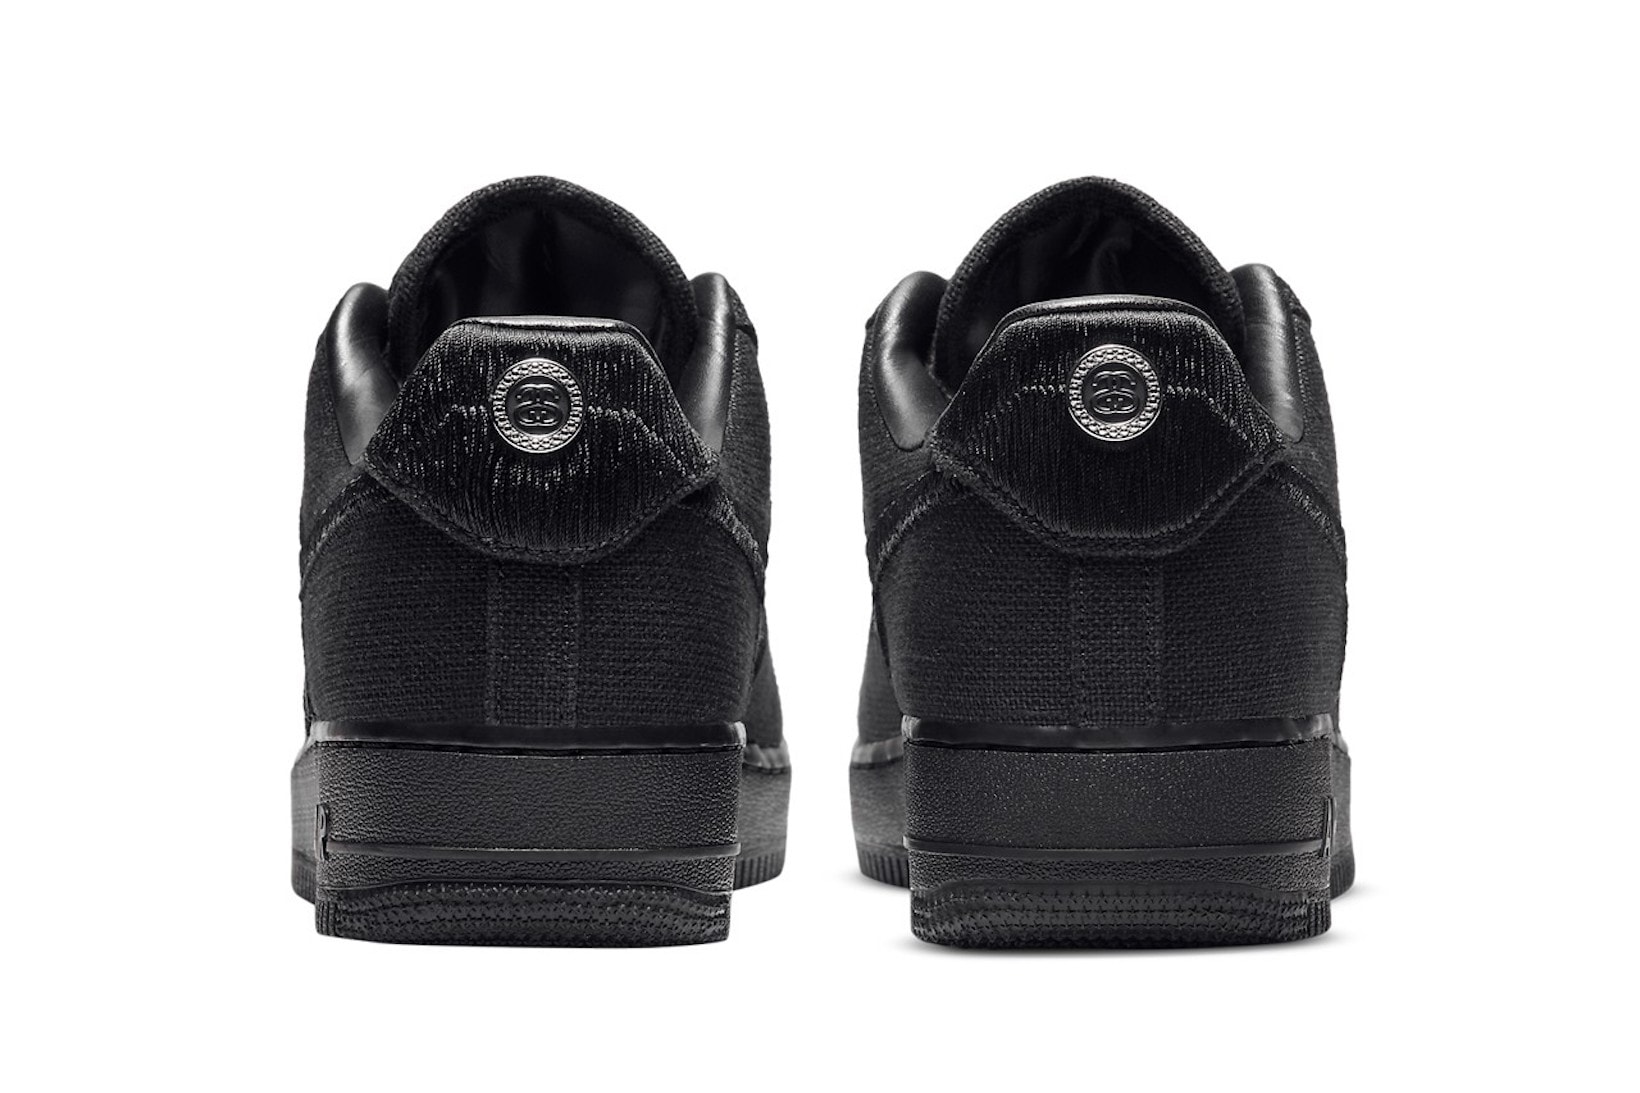 nike stussy collaboration air force 1 sneakers black colorway sneakerhead shoes footwear